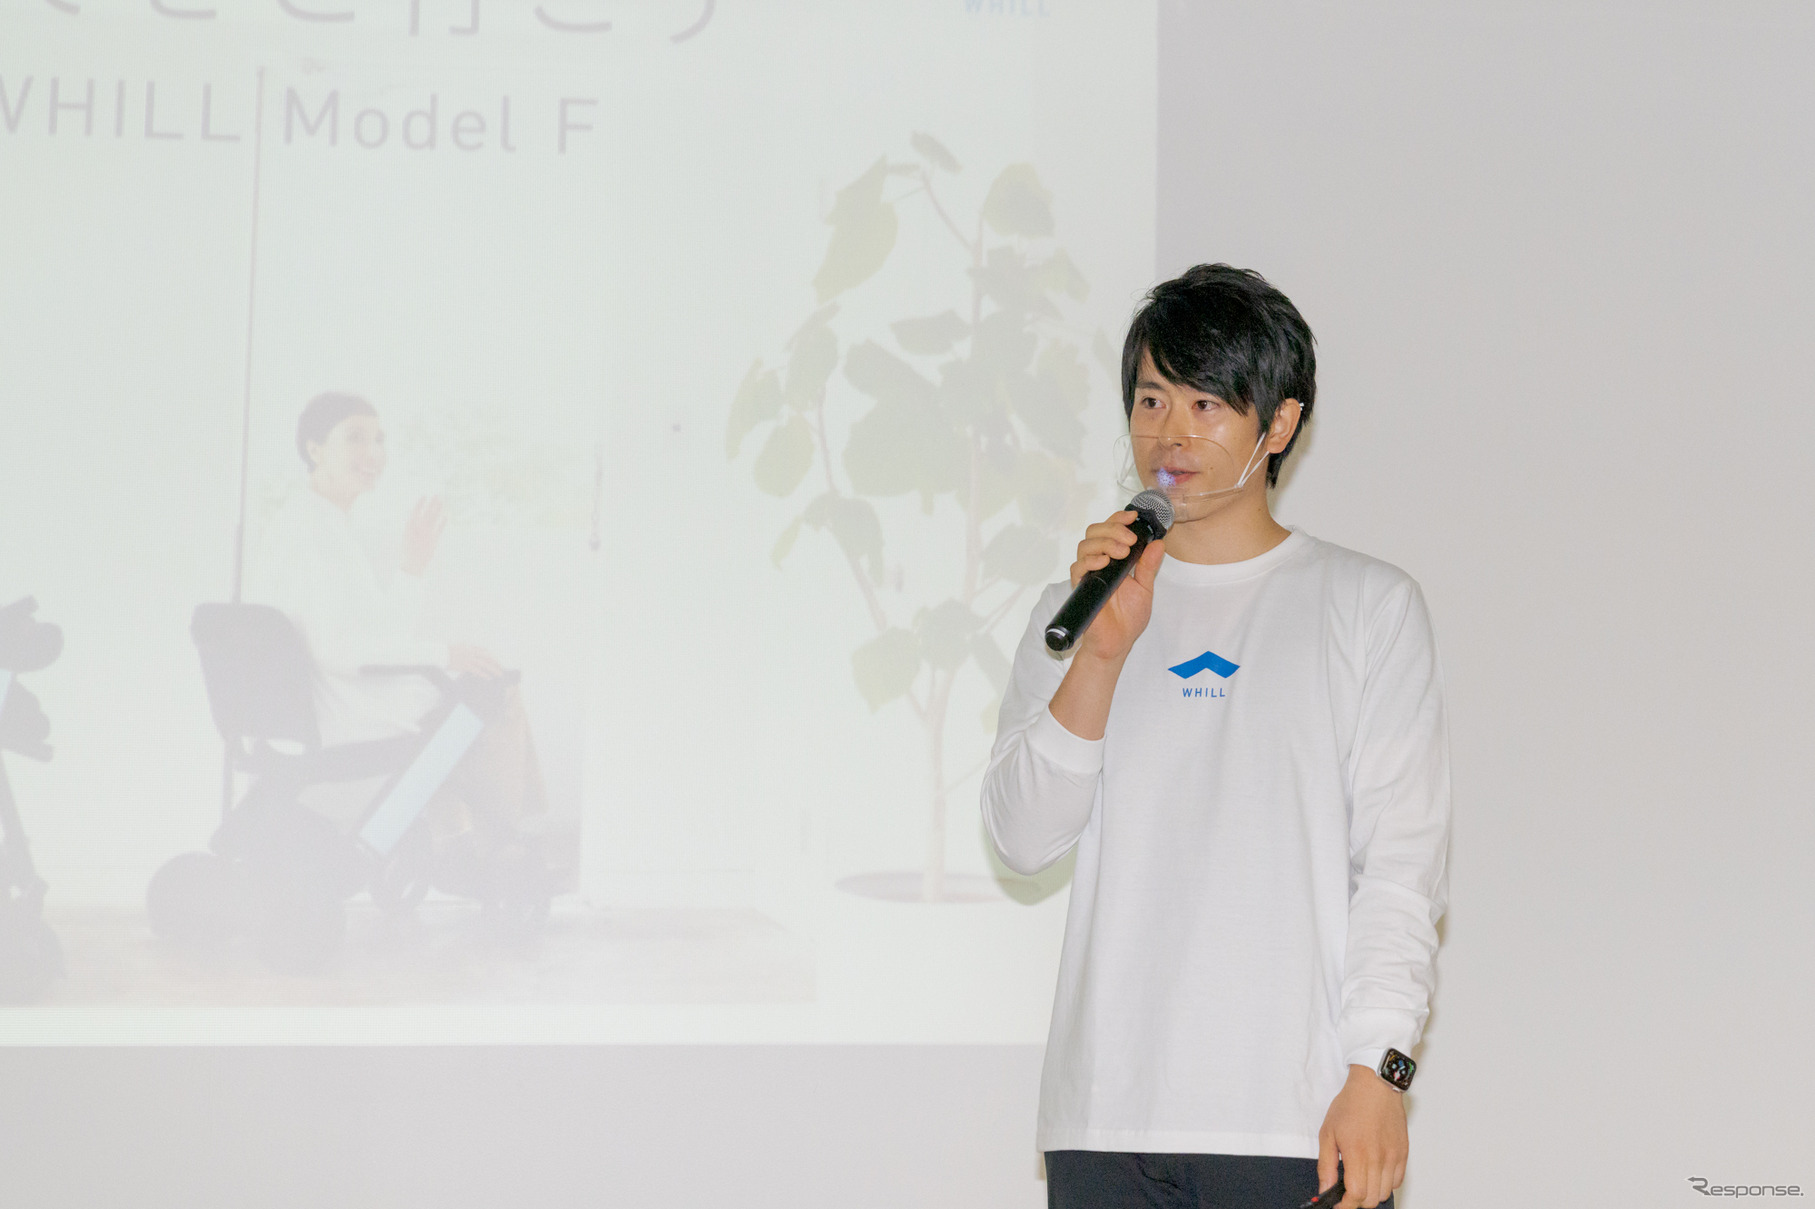 プロジェクトマネージャーの赤間礼氏が、Model Fについて説明した。